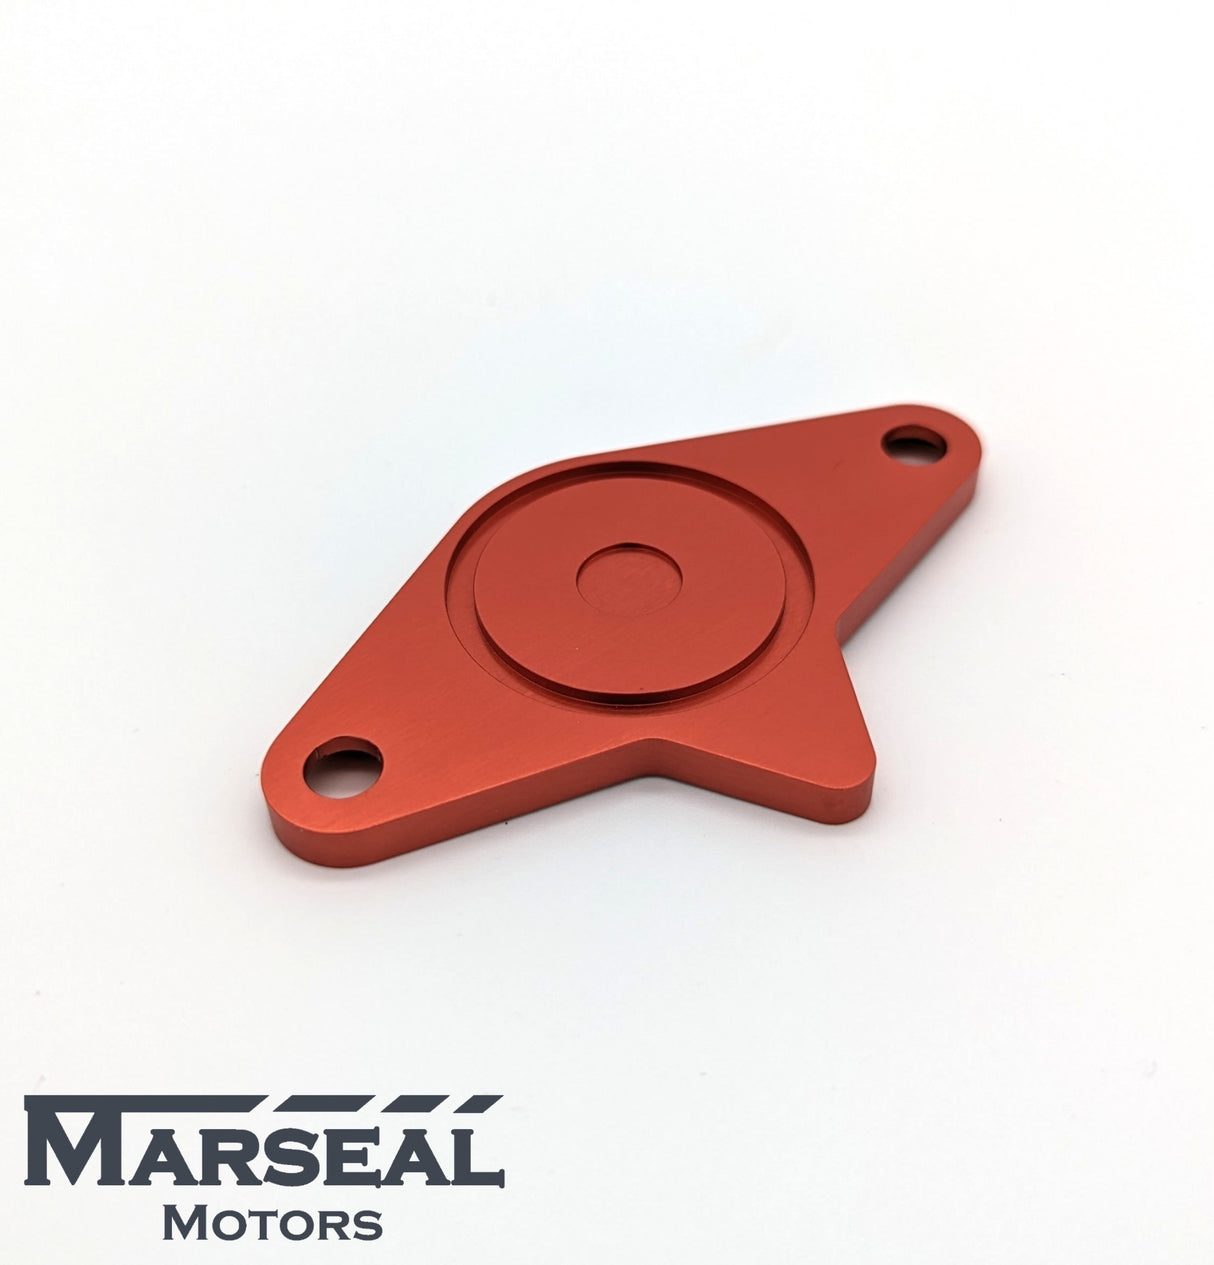 Marseal Motors - Kolbenverschlussplatte